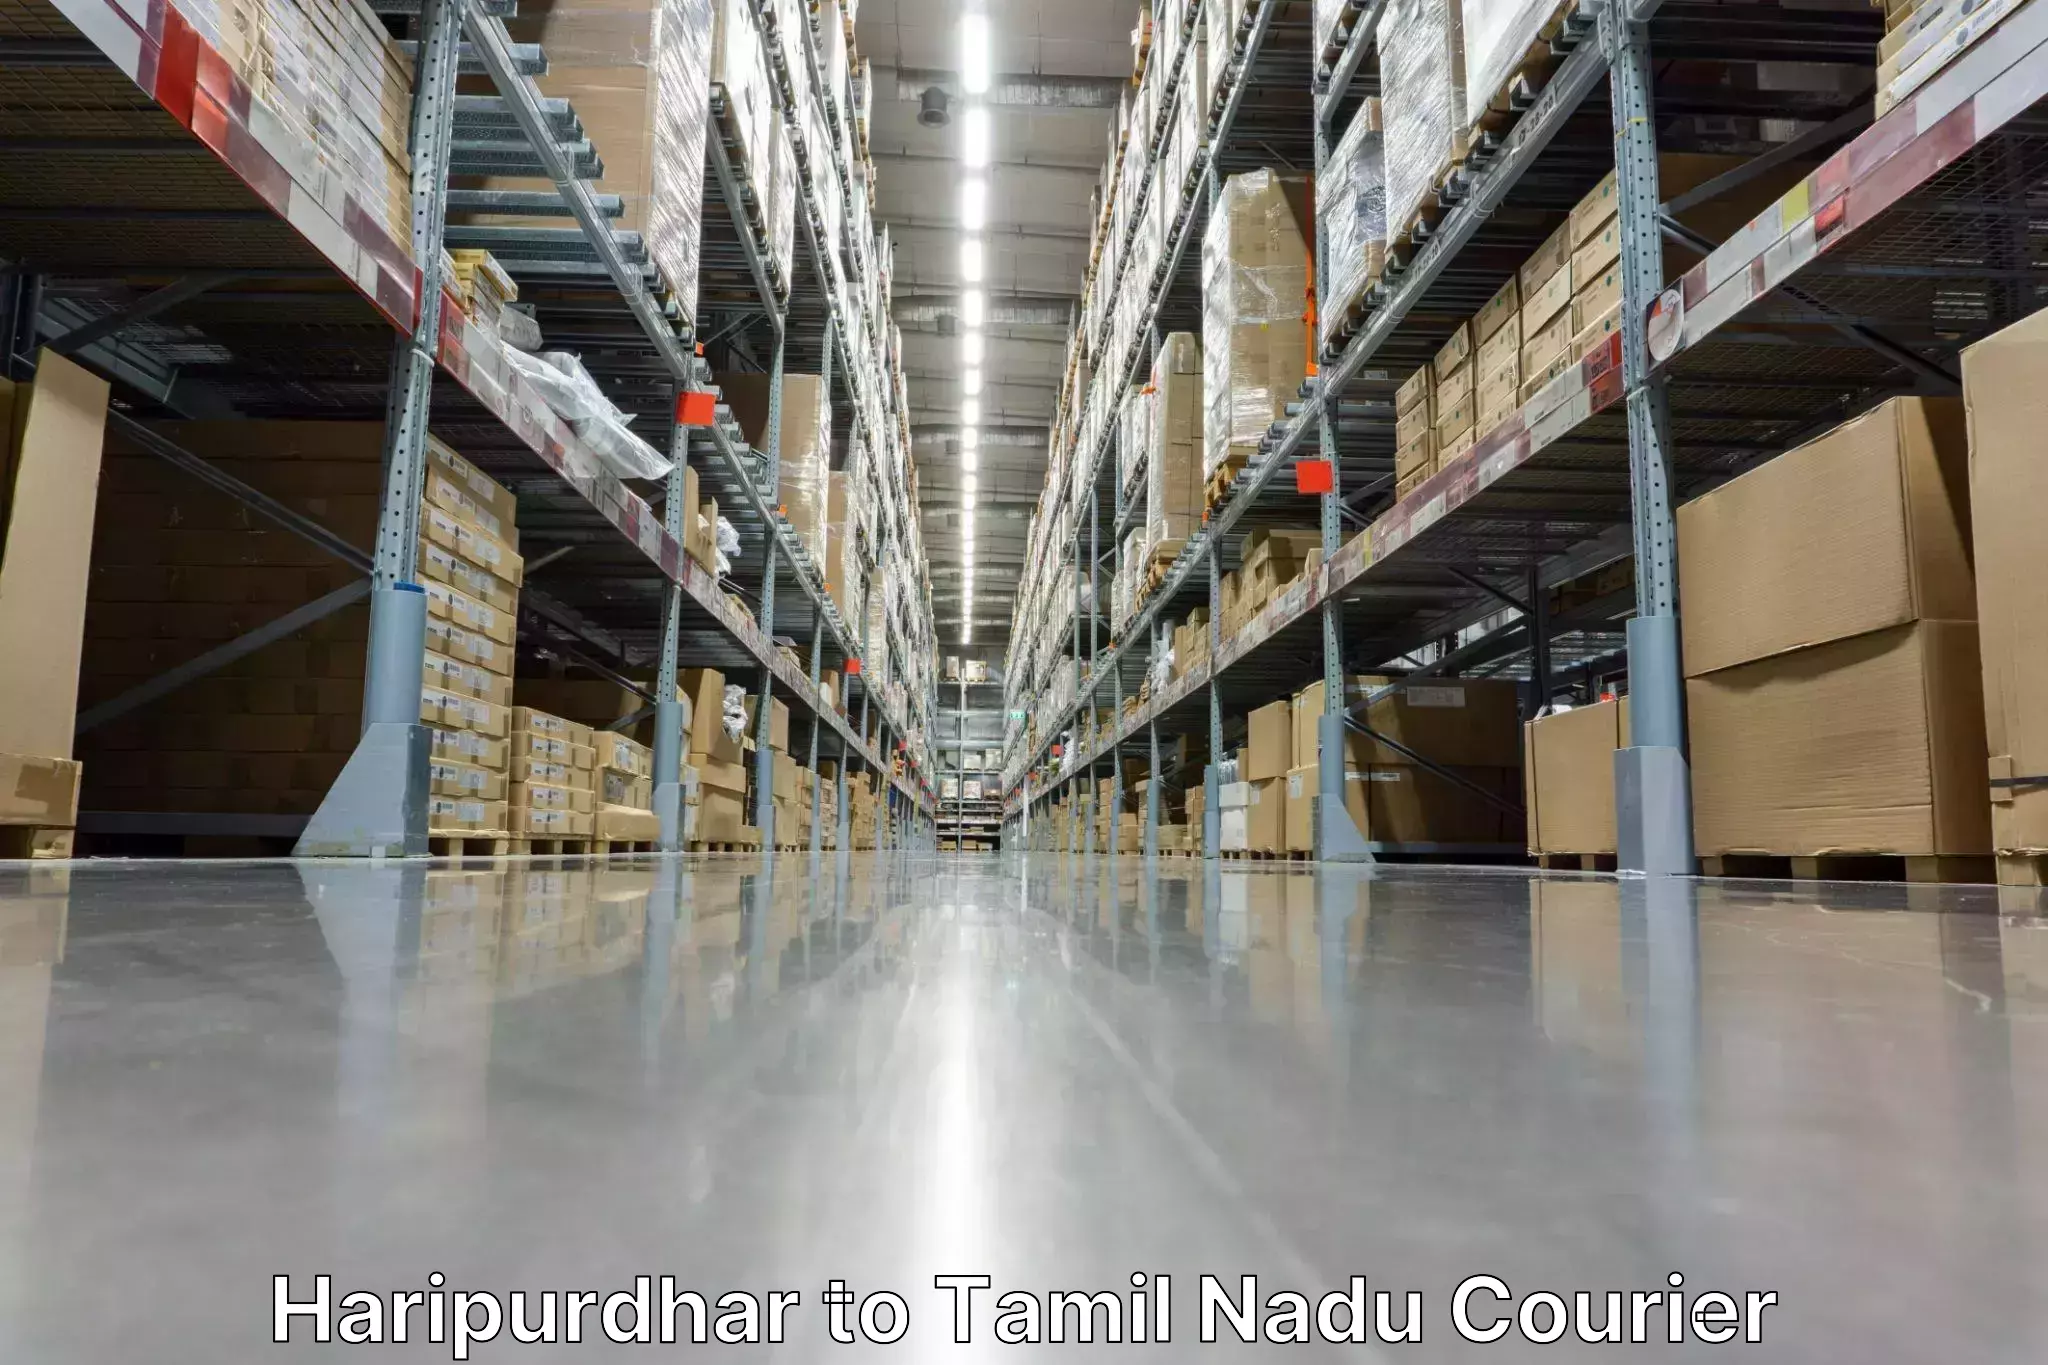 Custom courier solutions Haripurdhar to Viluppuram